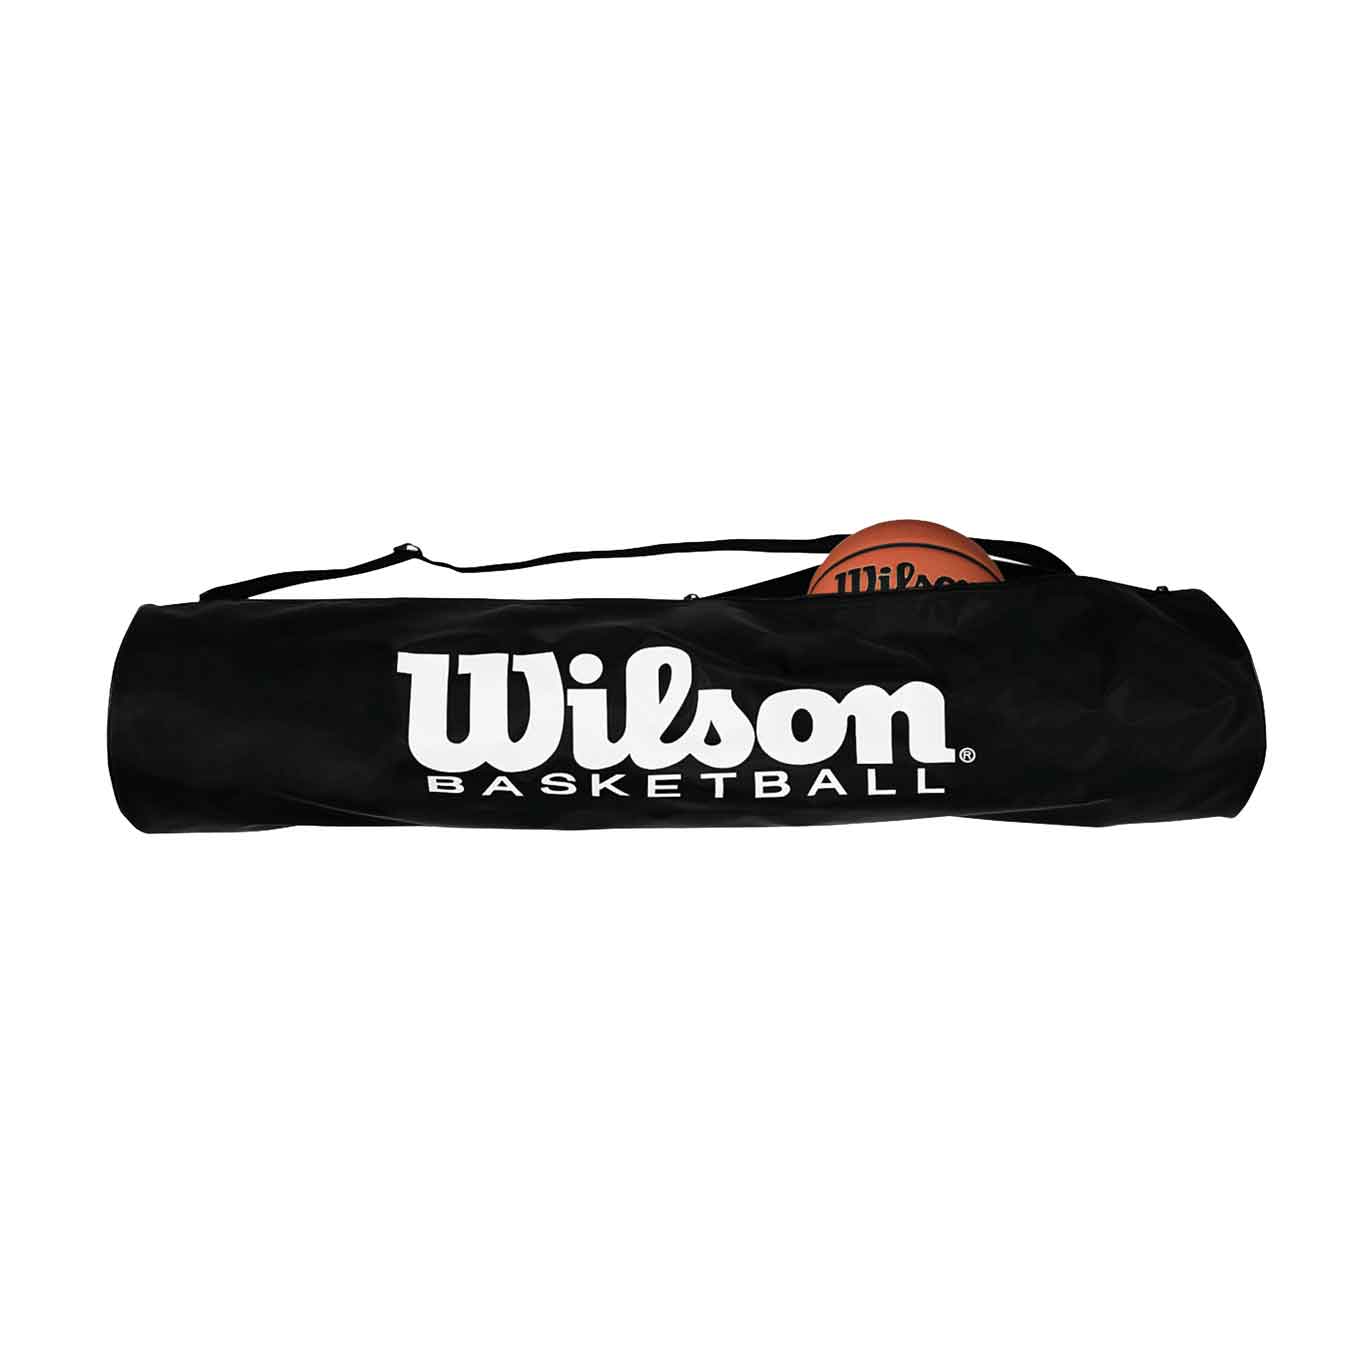 Wilson Basketball Tube Bag - Holds 6 Balls